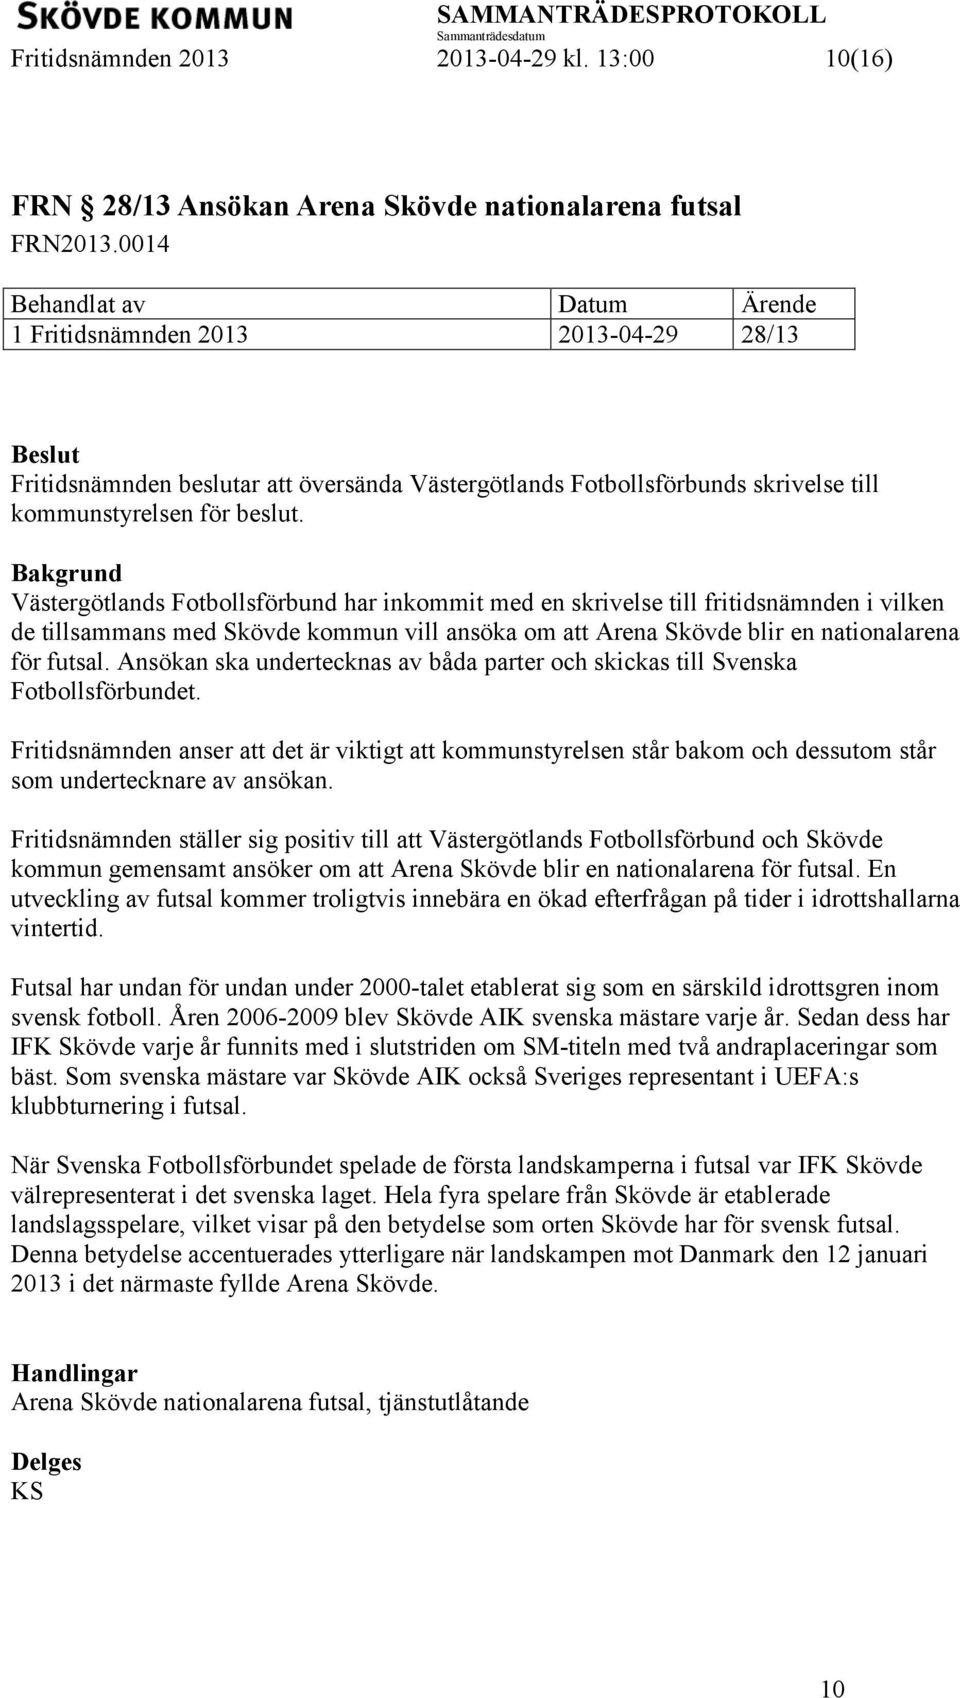 Västergötlands Fotbollsförbund har inkommit med en skrivelse till fritidsnämnden i vilken de tillsammans med Skövde kommun vill ansöka om att Arena Skövde blir en nationalarena för futsal.